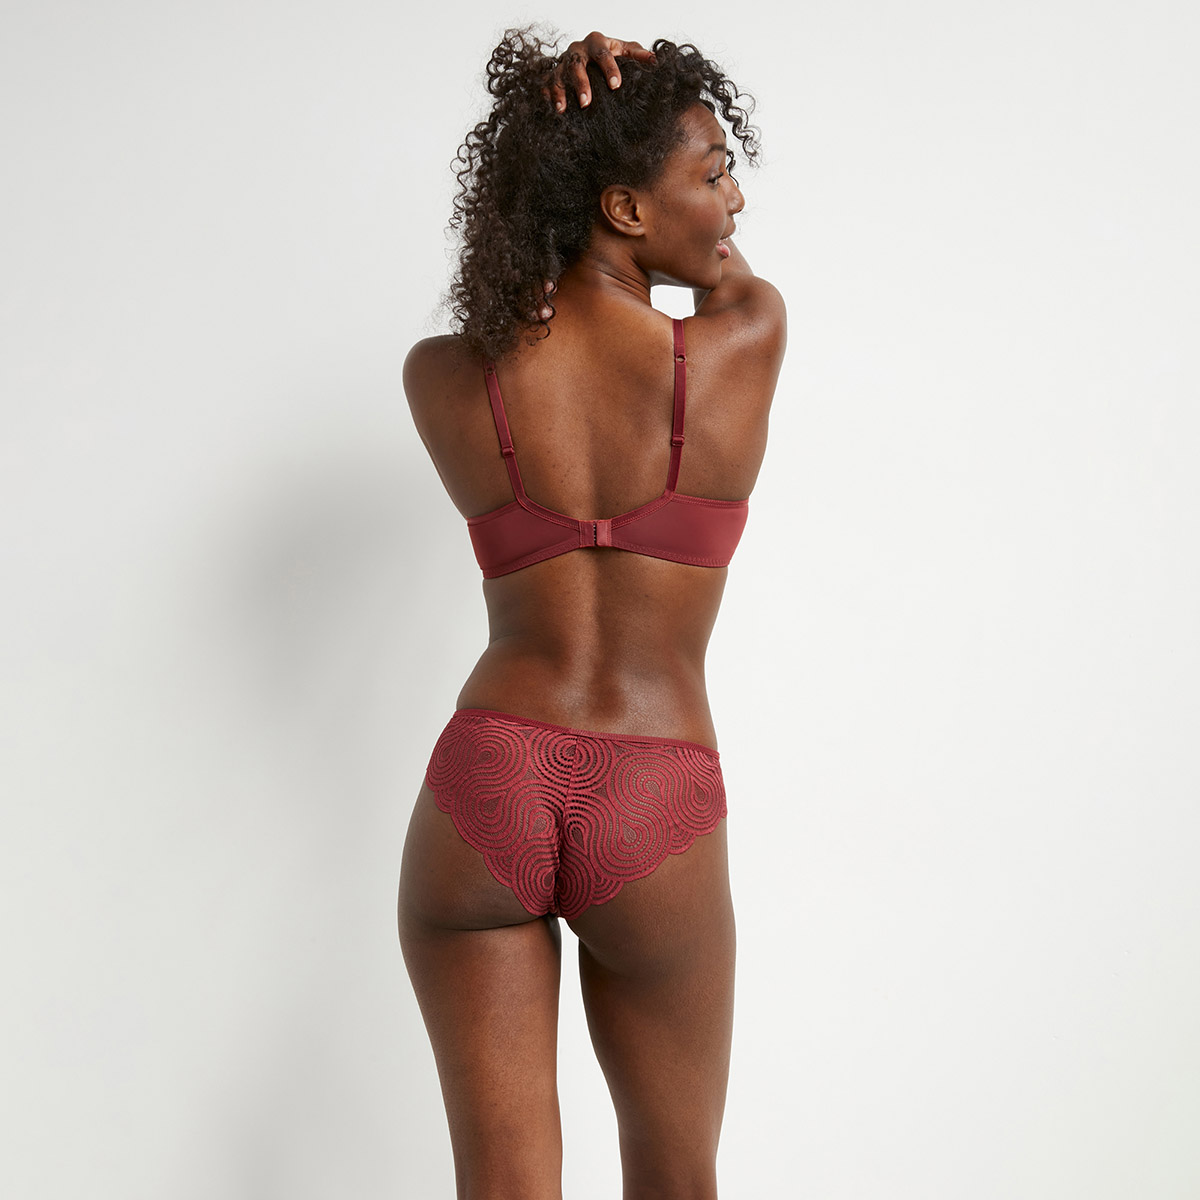 YWDJ Bras for Women Lace Everyday Ultra Thin High Beauty Underwear